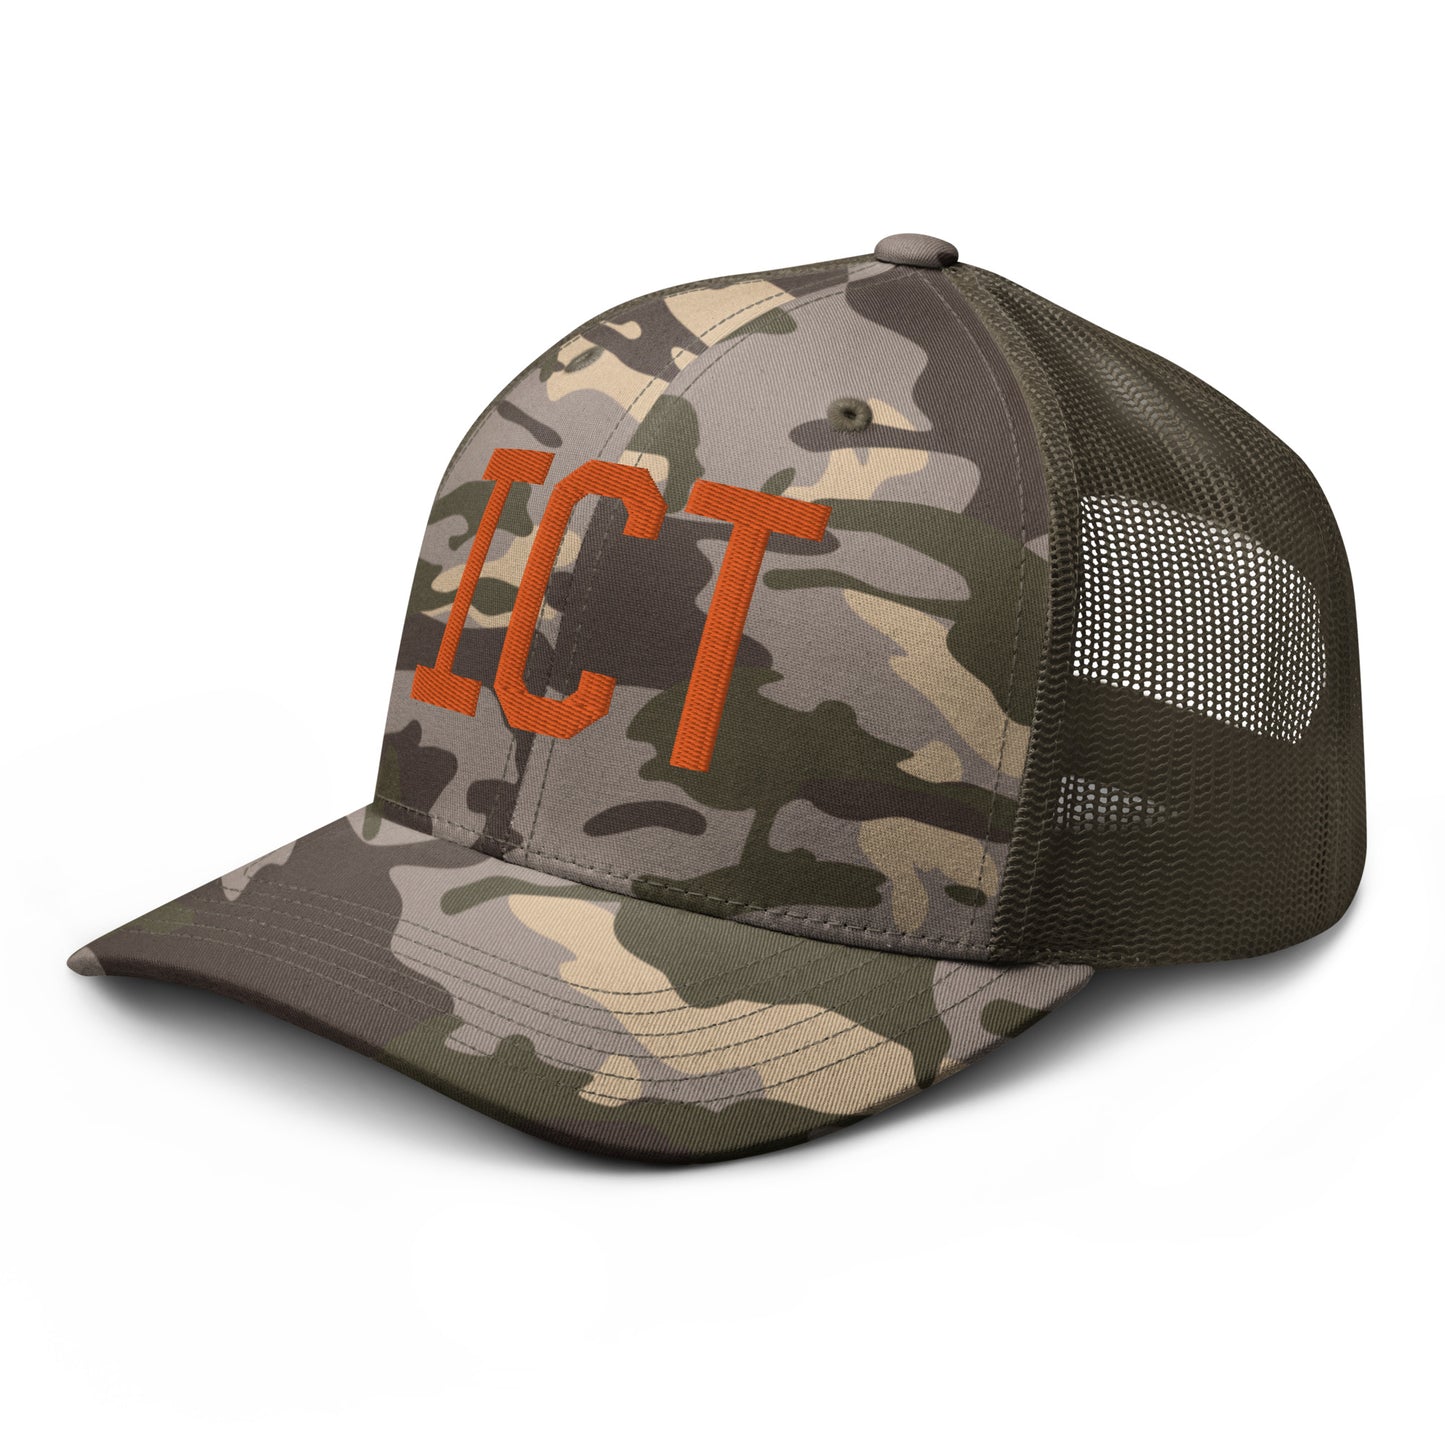 Airport Code Camouflage Trucker Hat - Orange • ICT Wichita • YHM Designs - Image 19